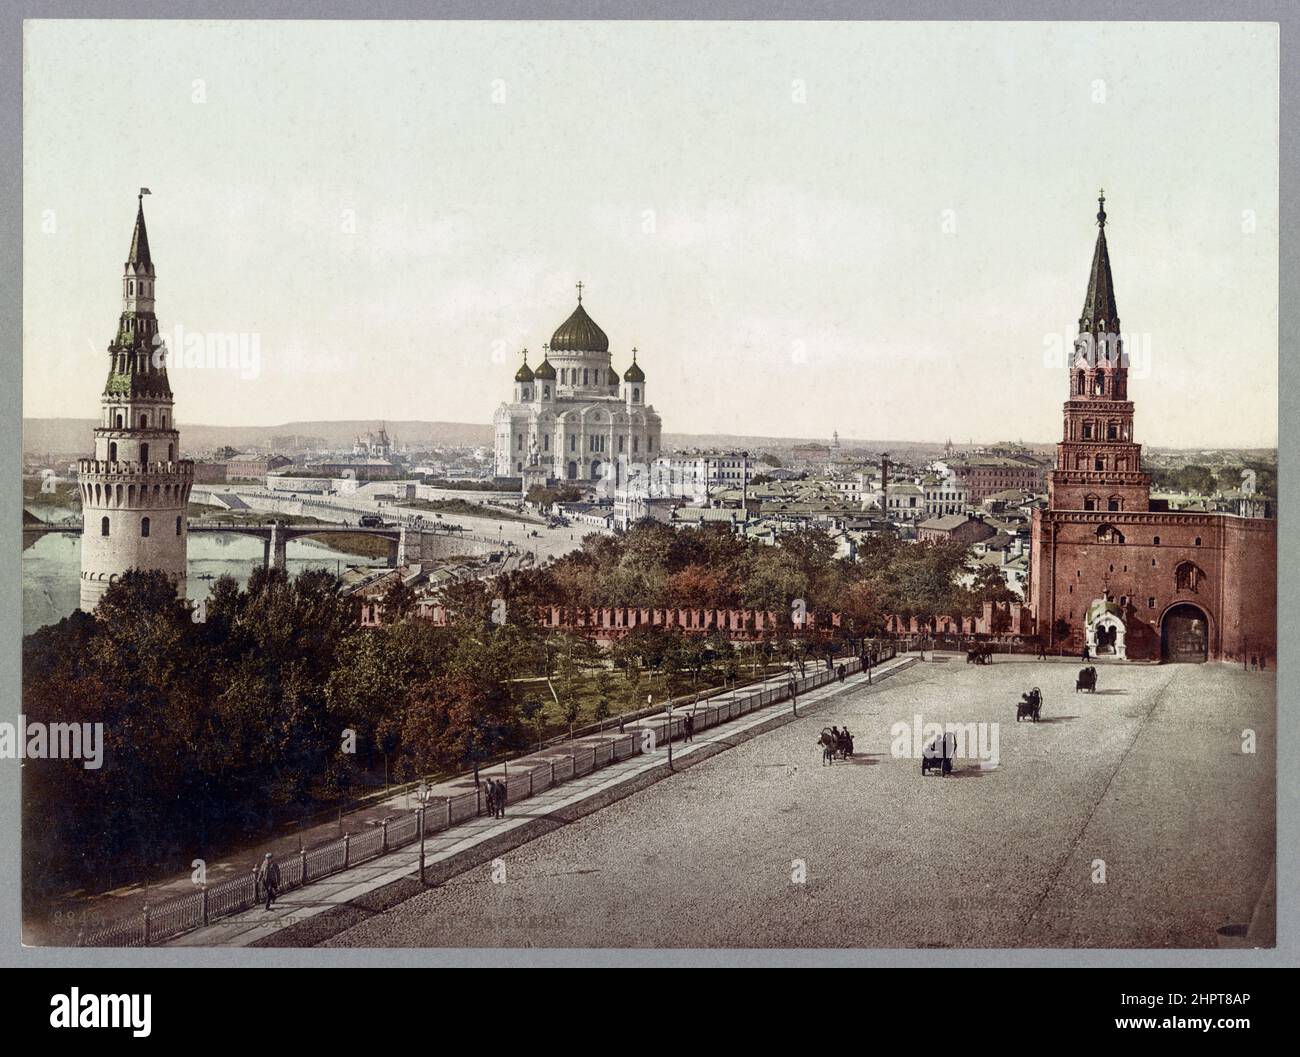 Photo d'époque de la cathédrale du Christ Sauveur du Kremlin de Moscou avec la Tour Borovitskaya (à droite) et la Tour Vodovzvodnaya au premier plan Banque D'Images